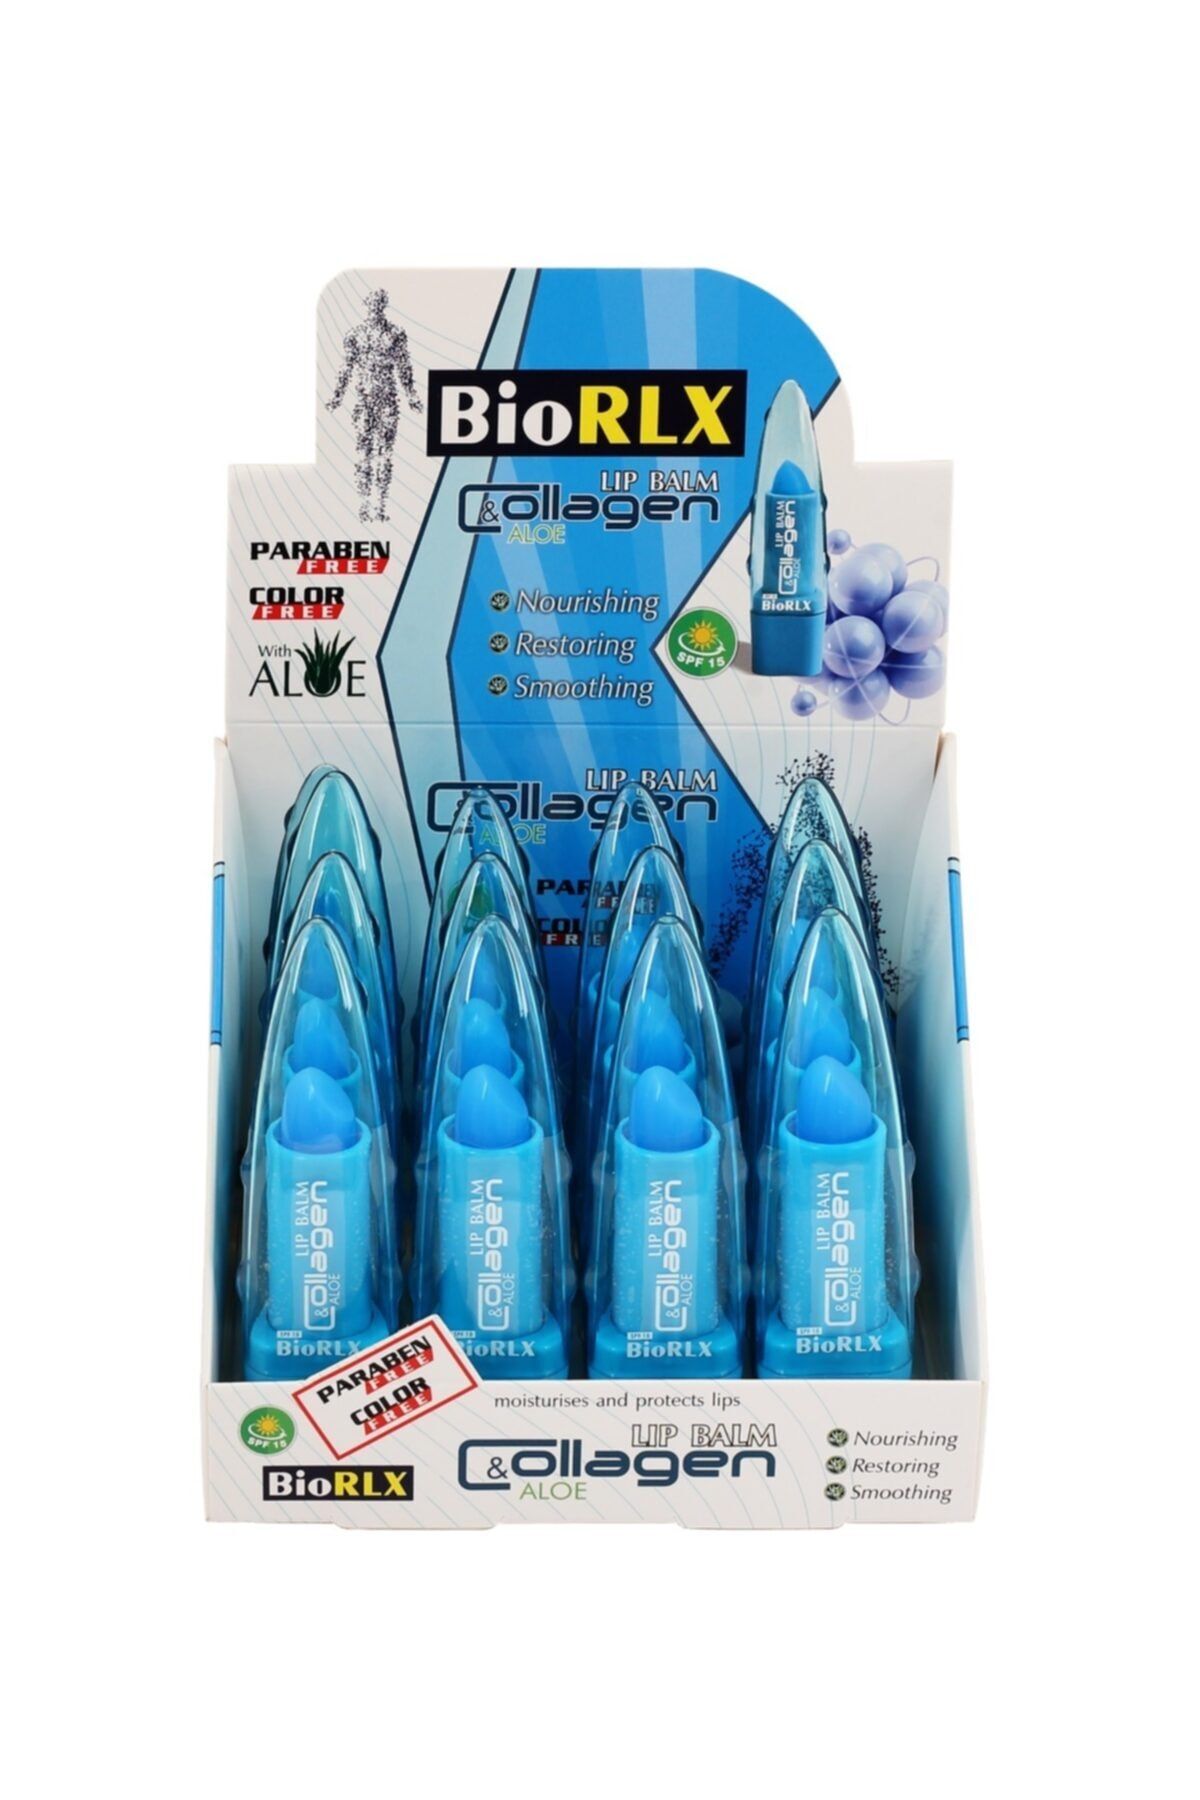 BioRLX Collagenli Aloe Vera Lip Balm 3,5 Gr Renksiz 12 Adet Spf 15 (paraben Free)